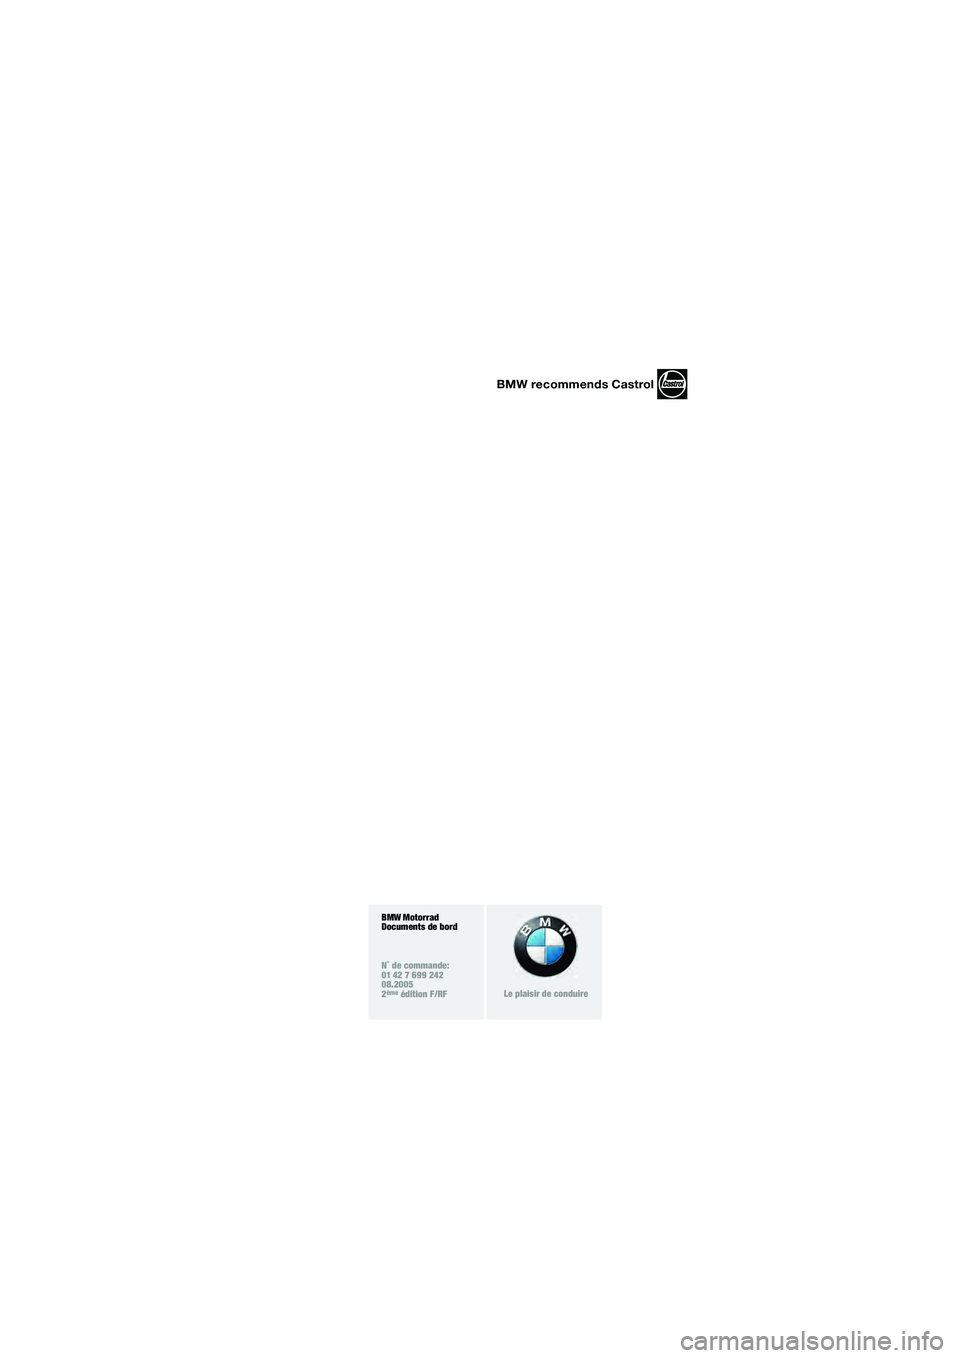 BMW MOTORRAD K 1200 LT 2005  Livret de bord (in French) 1
BMW Motorrad
Documents de bord
N˚ de commande:
01 42 7 699 242
08.2005
2
ème édition F/RFLe plaisir de conduire
BMW recommends Castrol
10LTbkf6.book  Seite 3  Freitag, 1. Juli 2005  9:01 09 